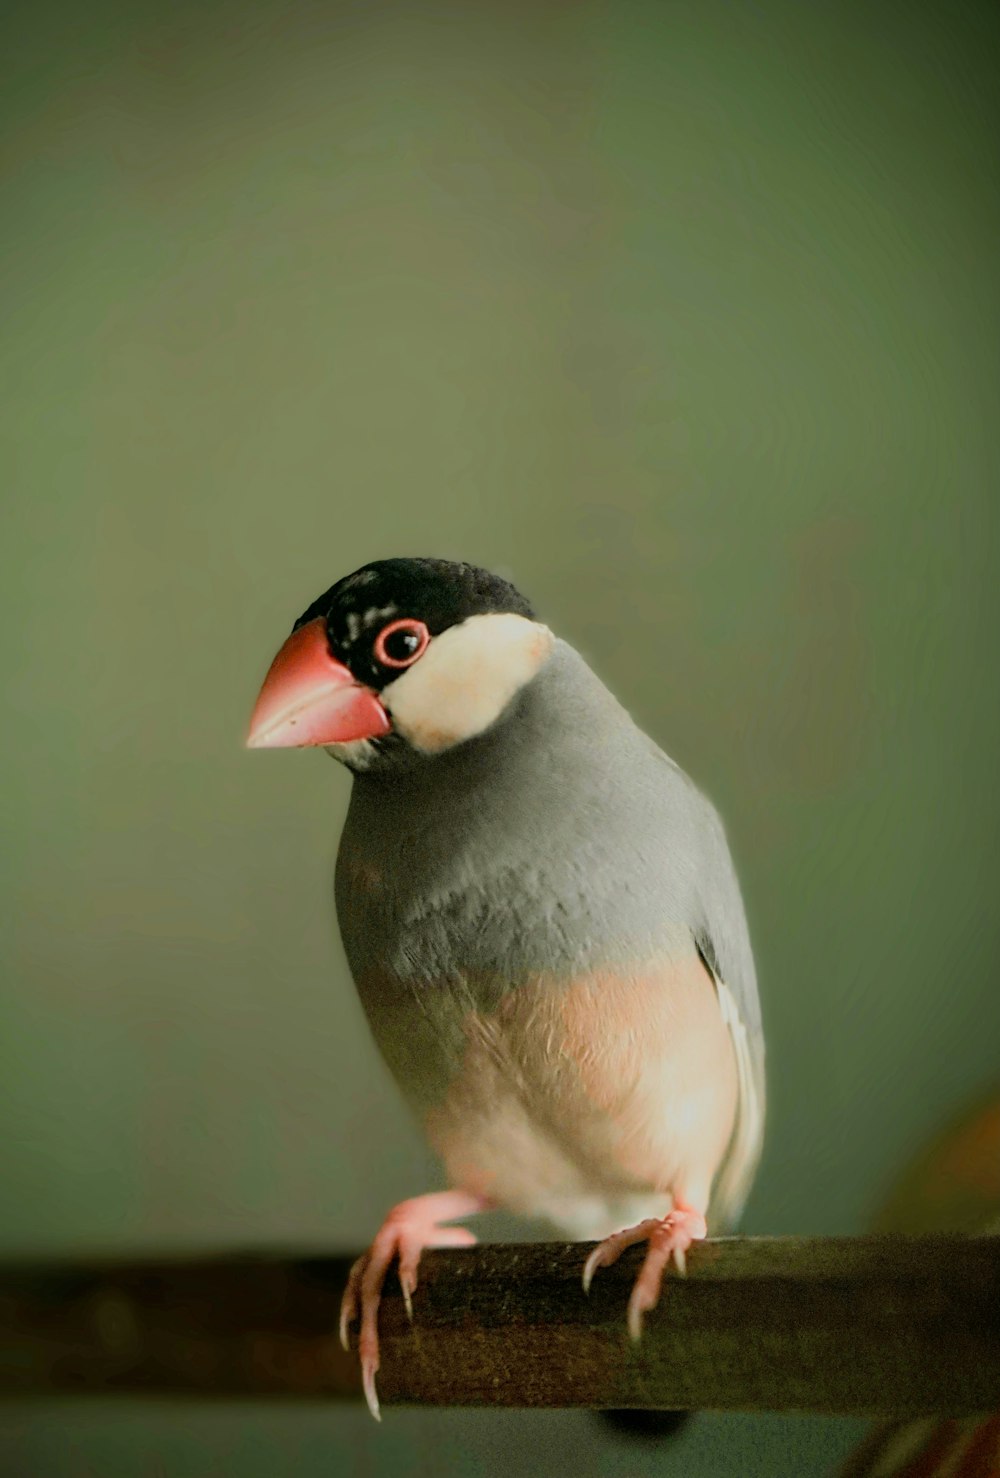 a bird with a red beak